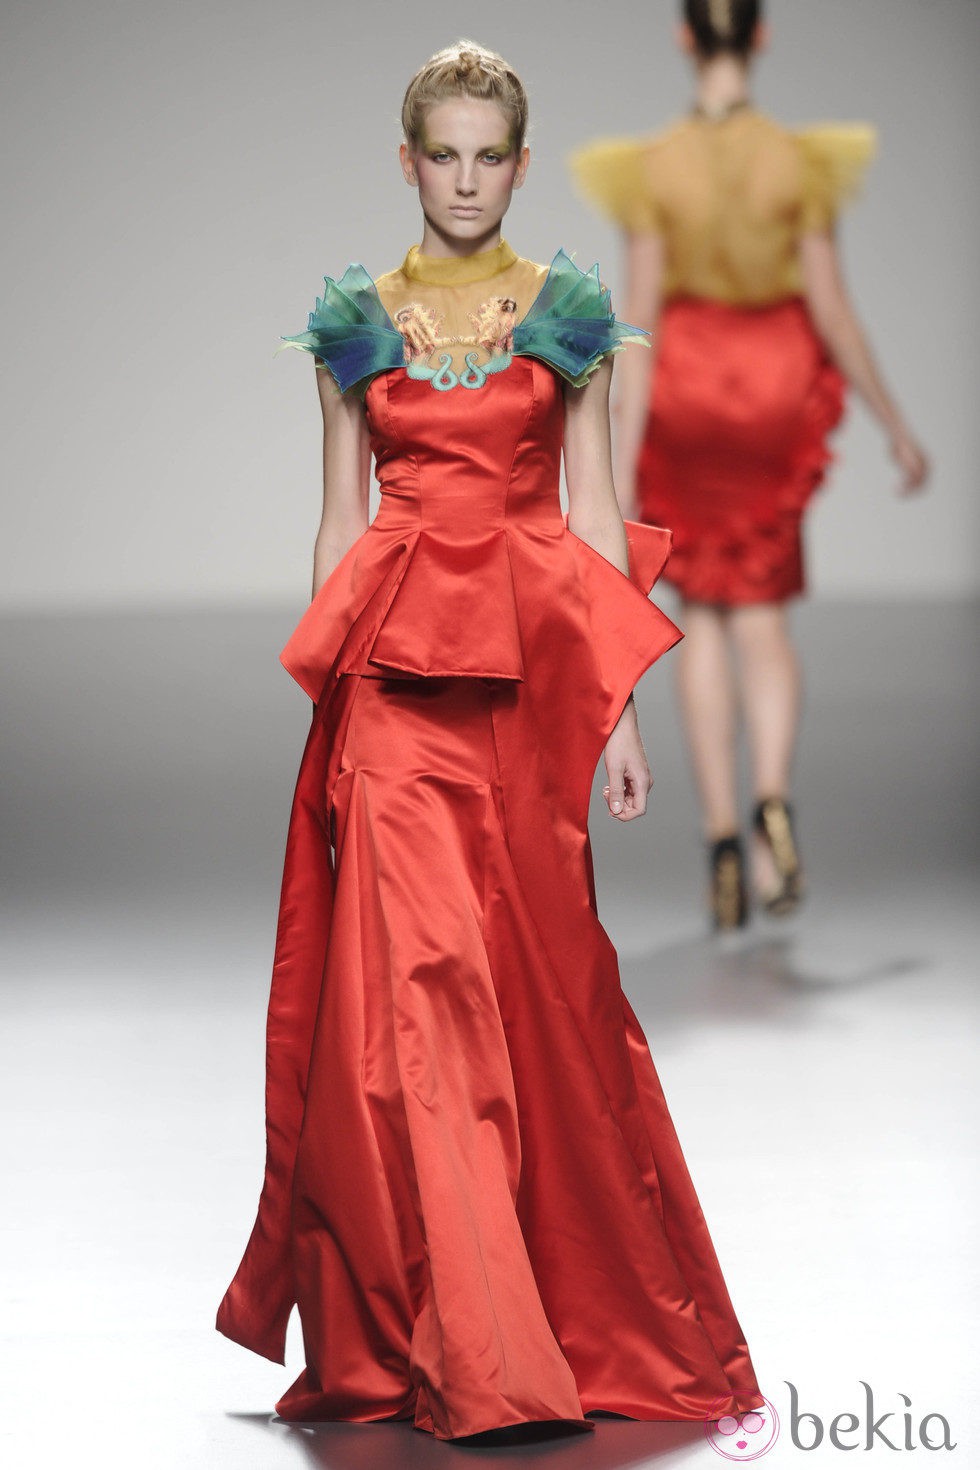 Vestido de raso rojo largo de la colección primavera/verano 2013 de Leyre Valiente